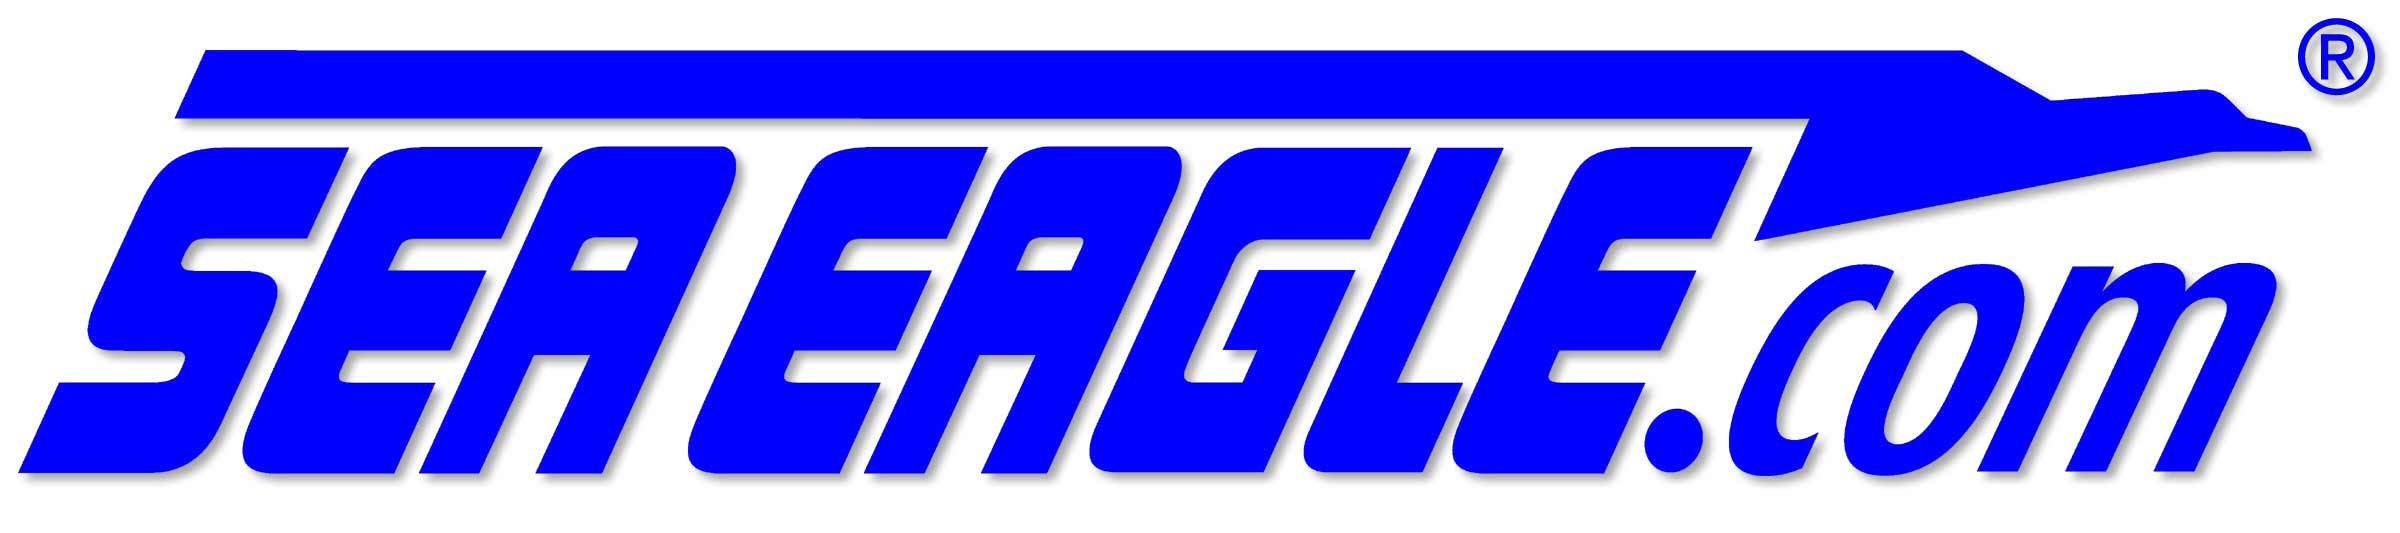 Sea Eagle logo.jpg